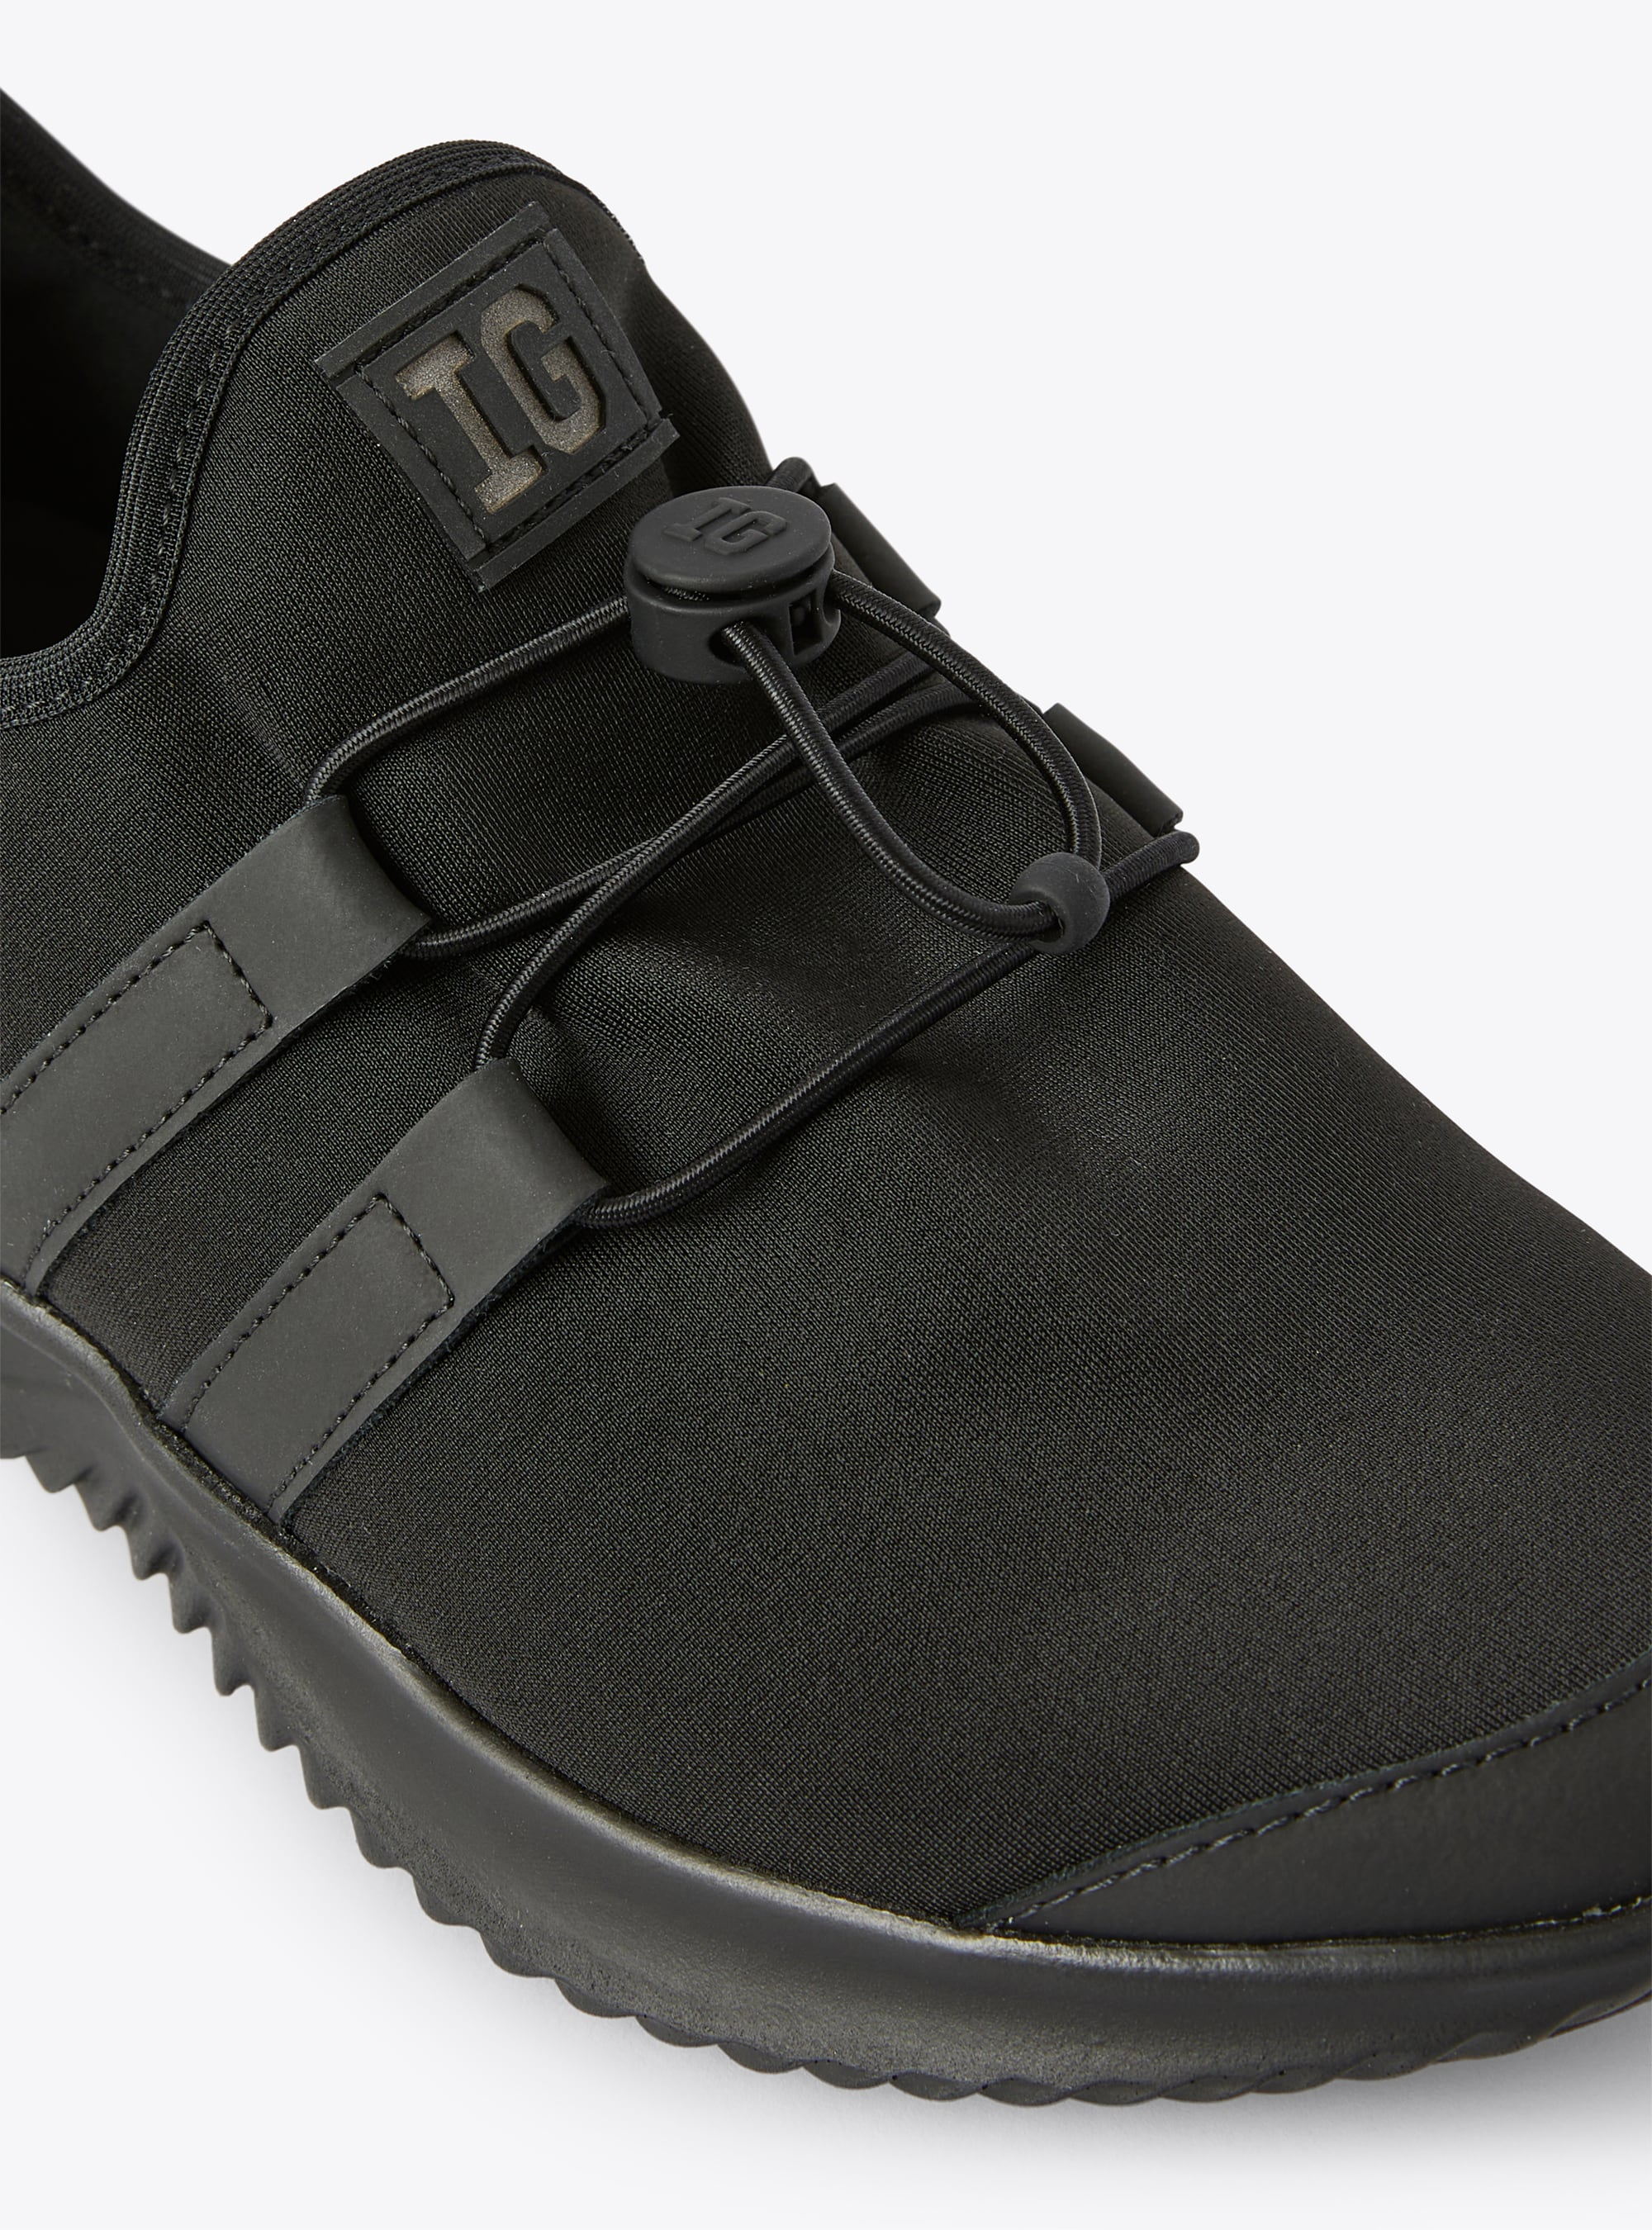 IG sneaker in black neoprene - Black | Il Gufo